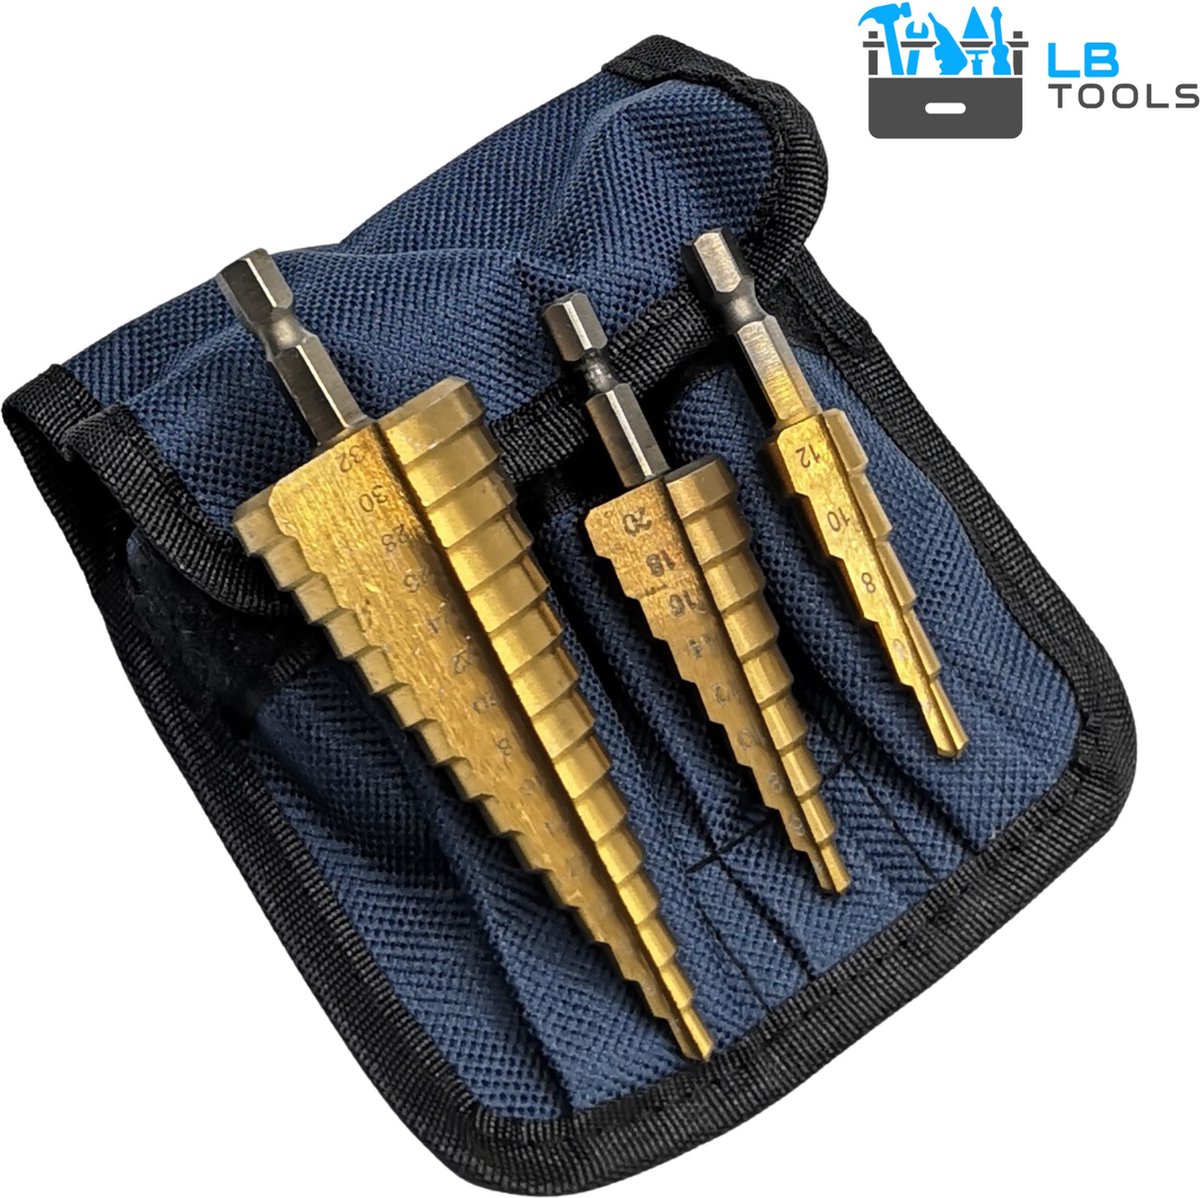 LB Tools 3 delige HSS stappenboor conische trappenboor 4-32mm, 4-20mm en 4-12mm met zeskant aansluiting.